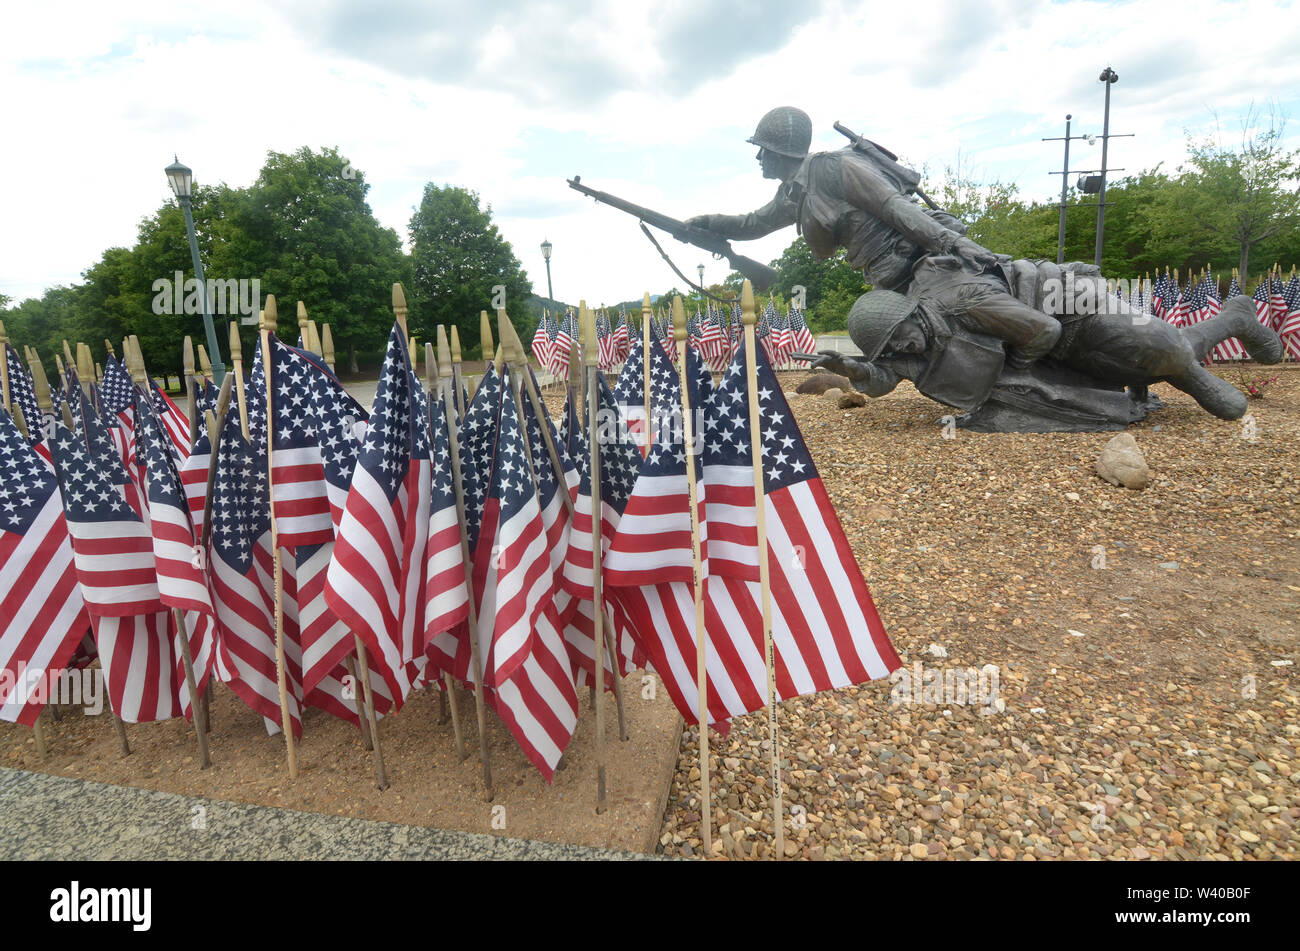 Con pequeñas banderas americanas muestra en primer plano, una estatua de un soldado ayudando a un compañero herido en el Día-D Memorial en Virginia. Foto de stock